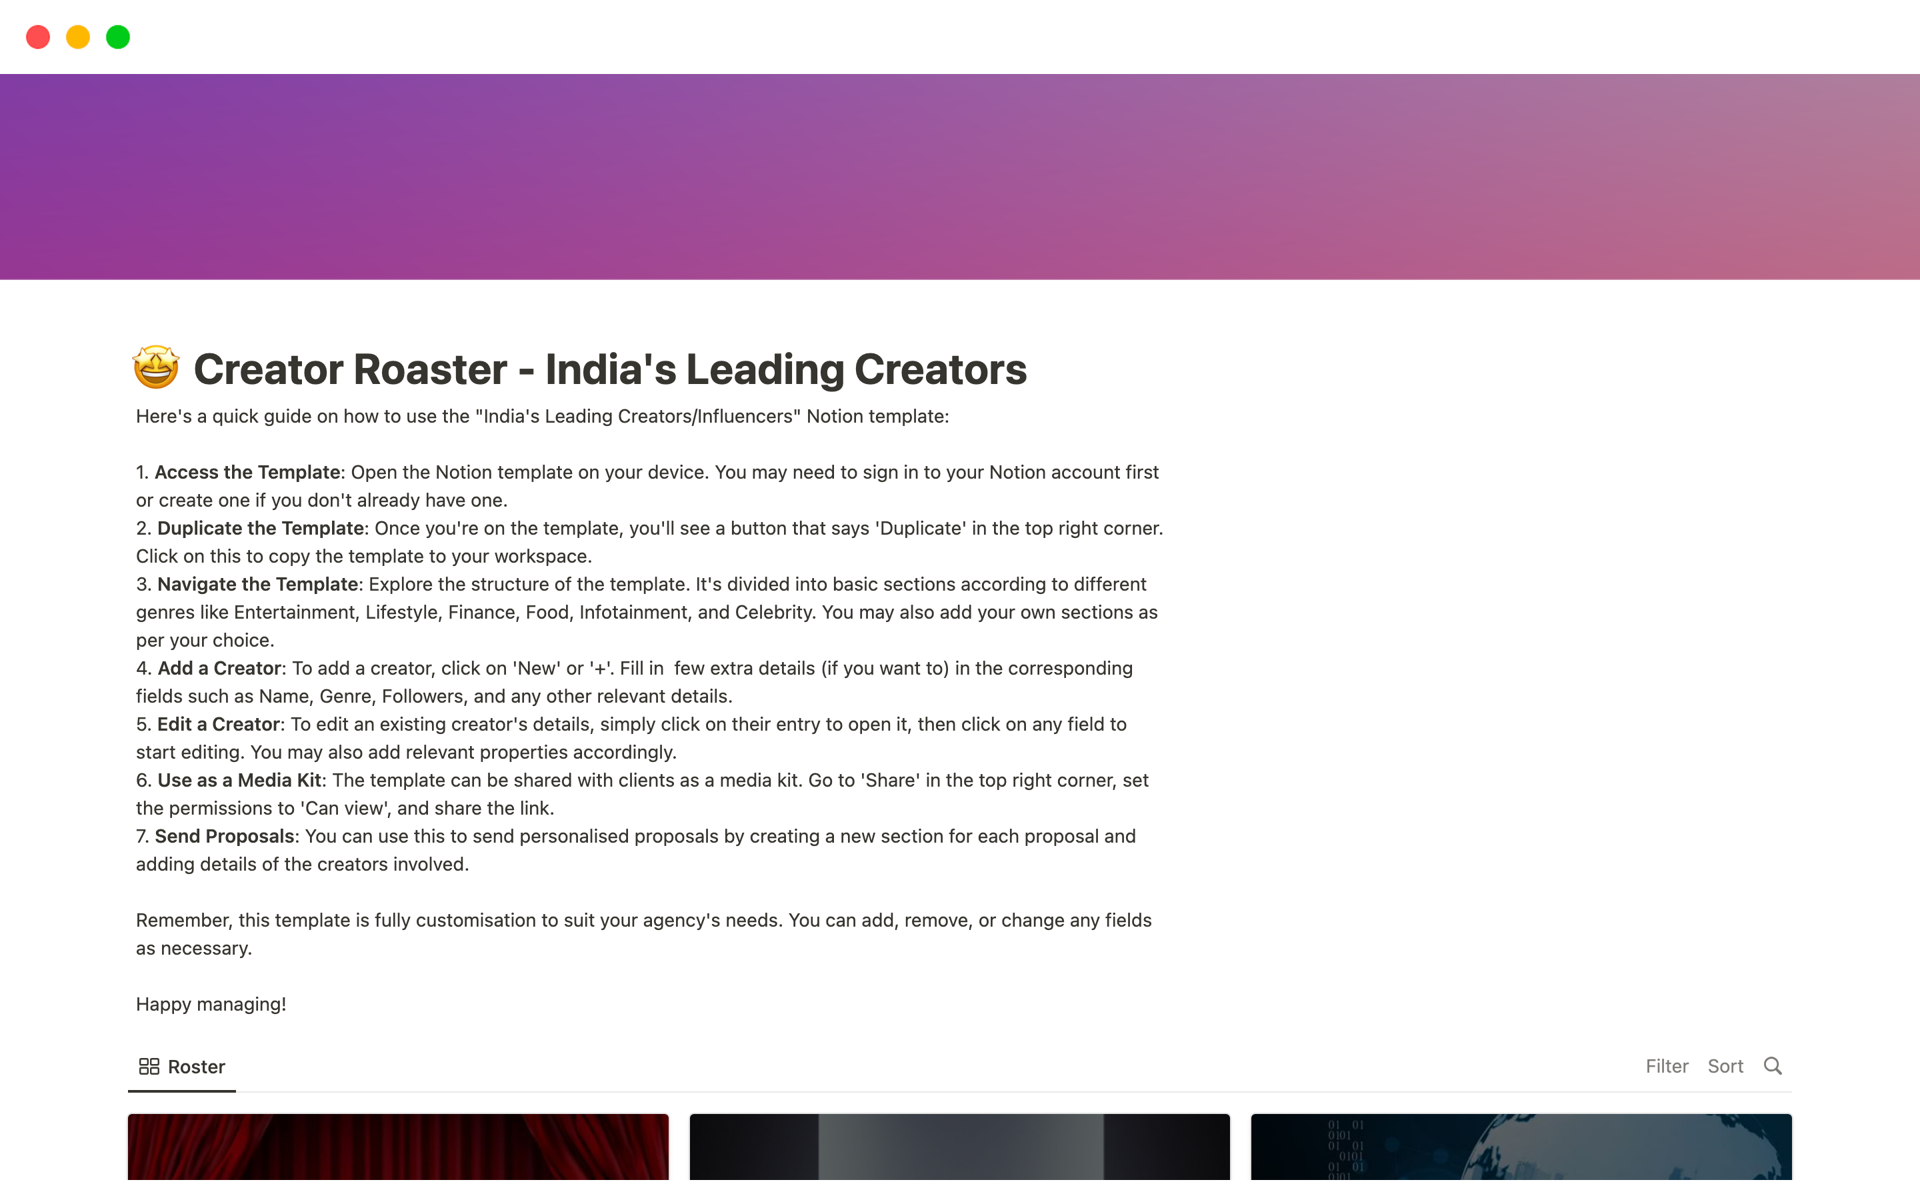 En förhandsgranskning av mallen för The Creator Roster - India's Leading Creators